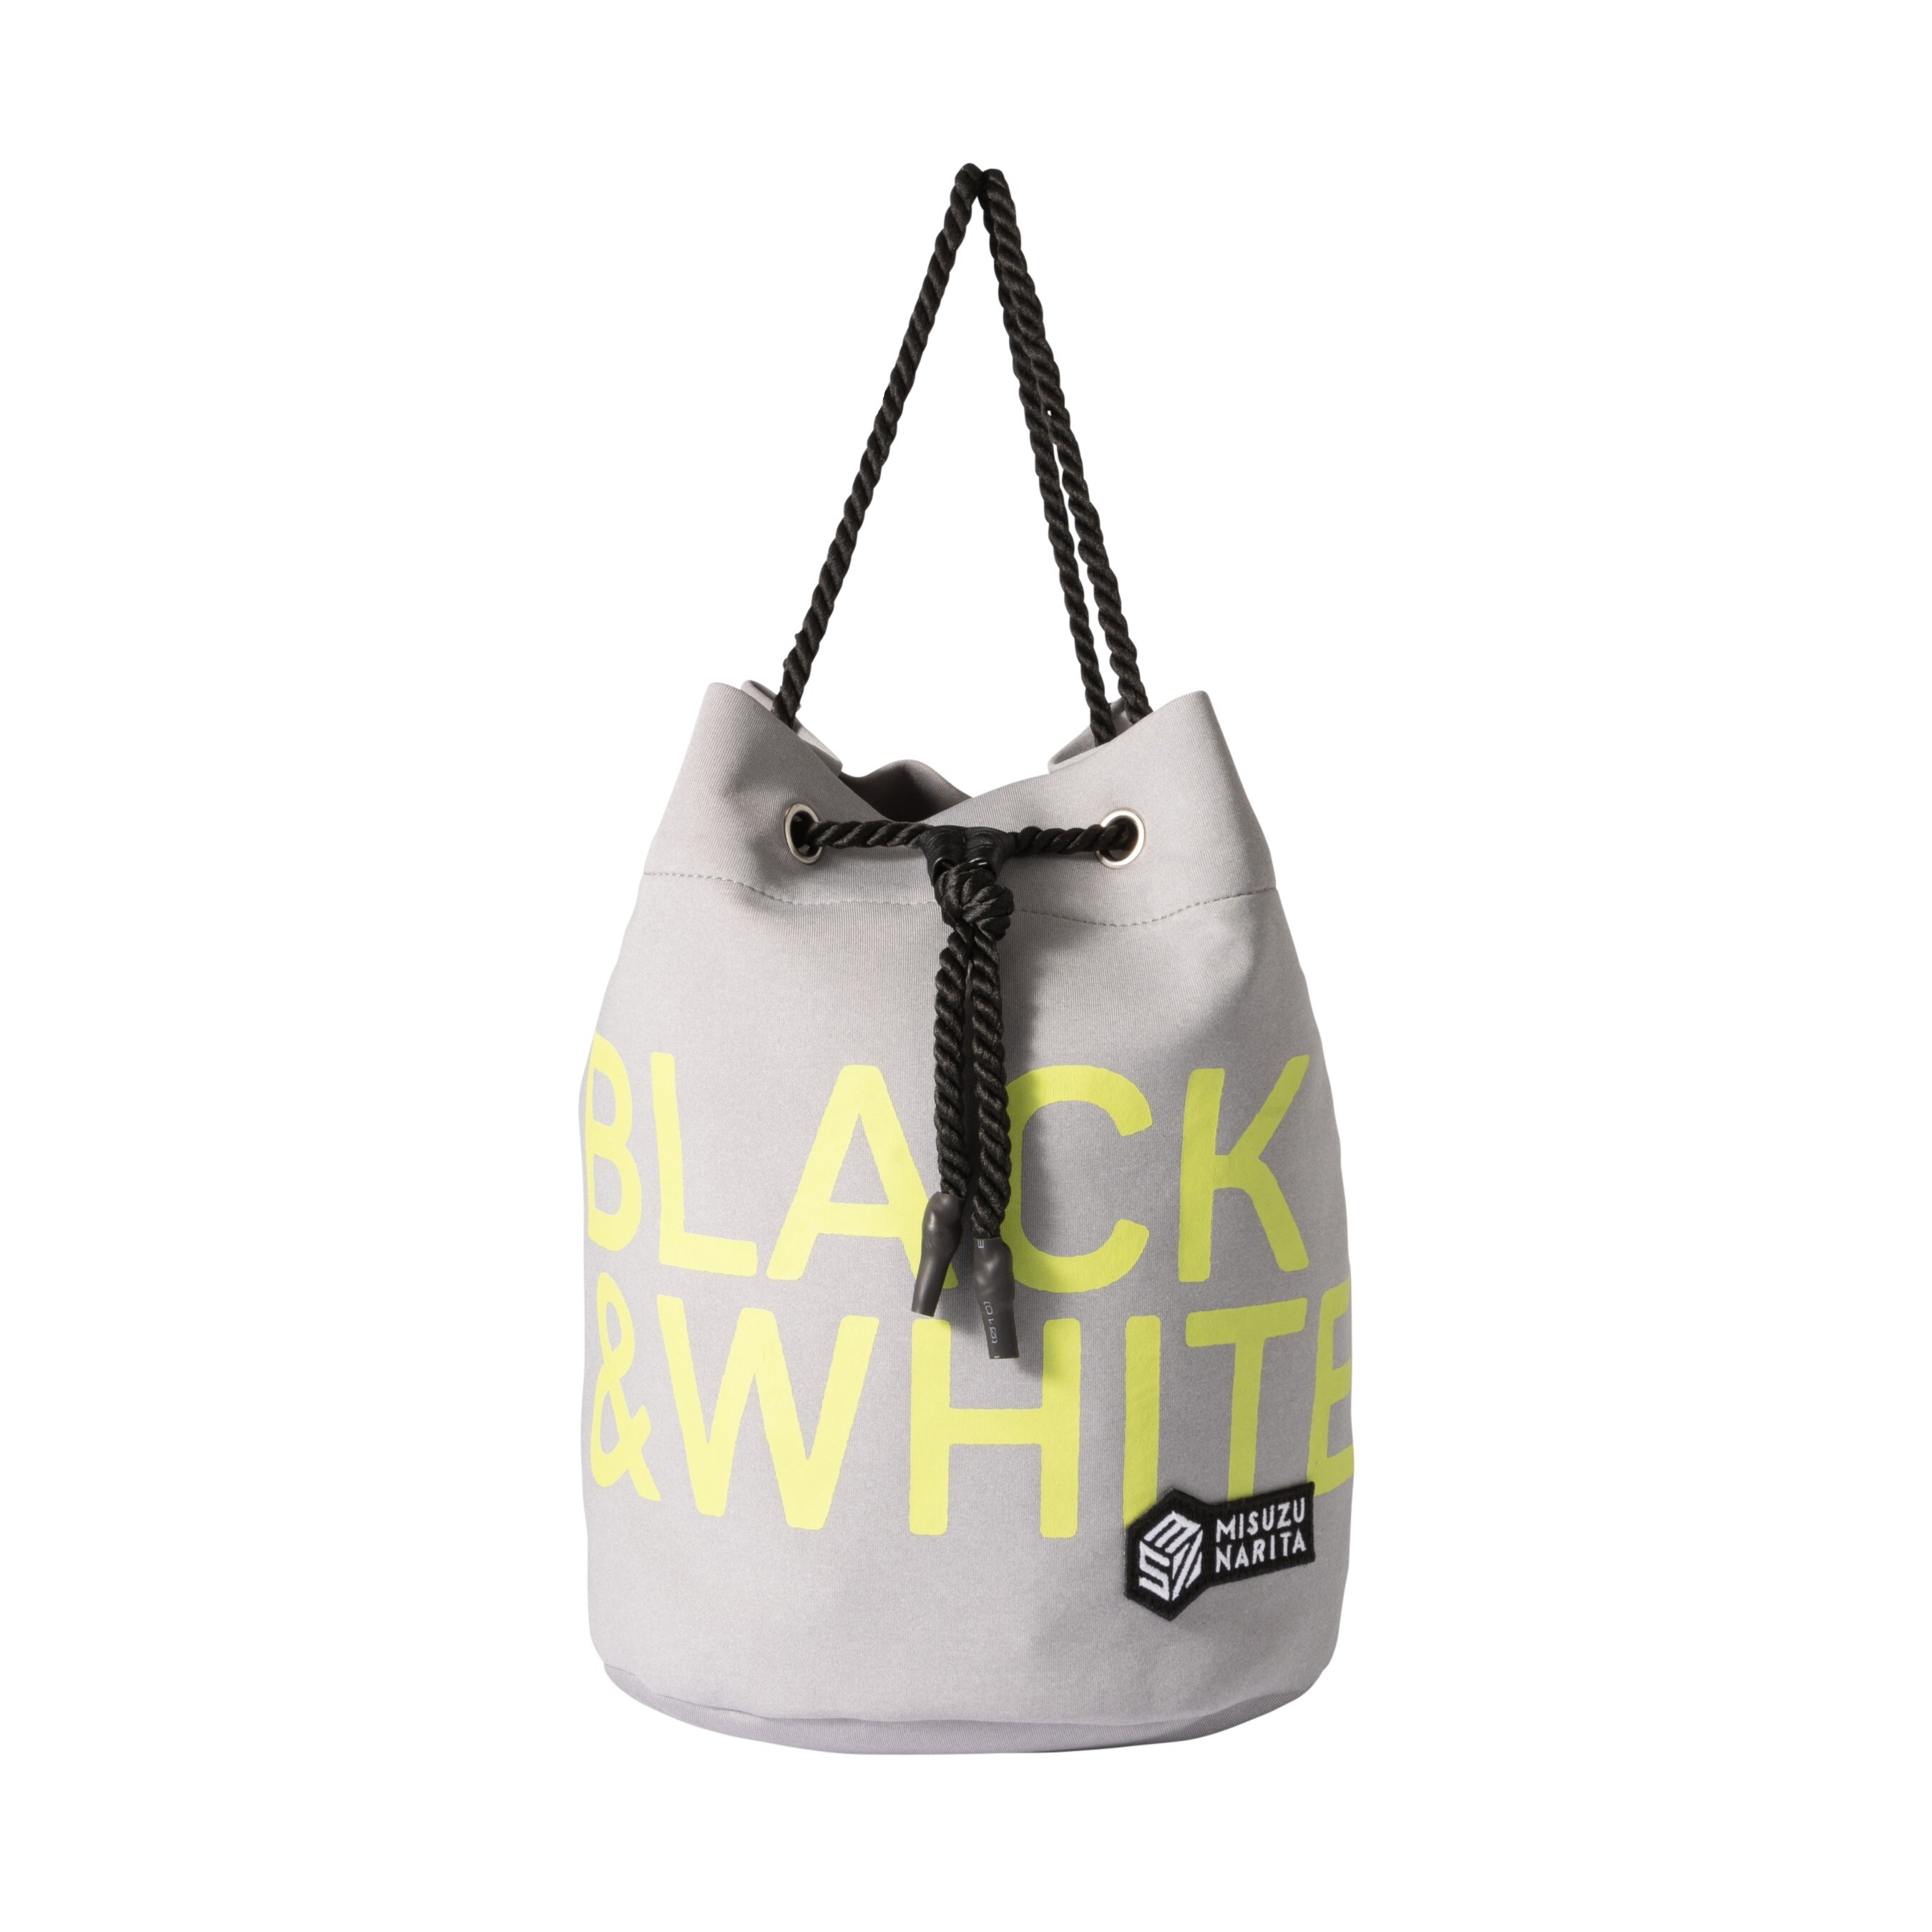 MiSUZU NARITA × Black & White WHITE Line Collaboration DEBUT